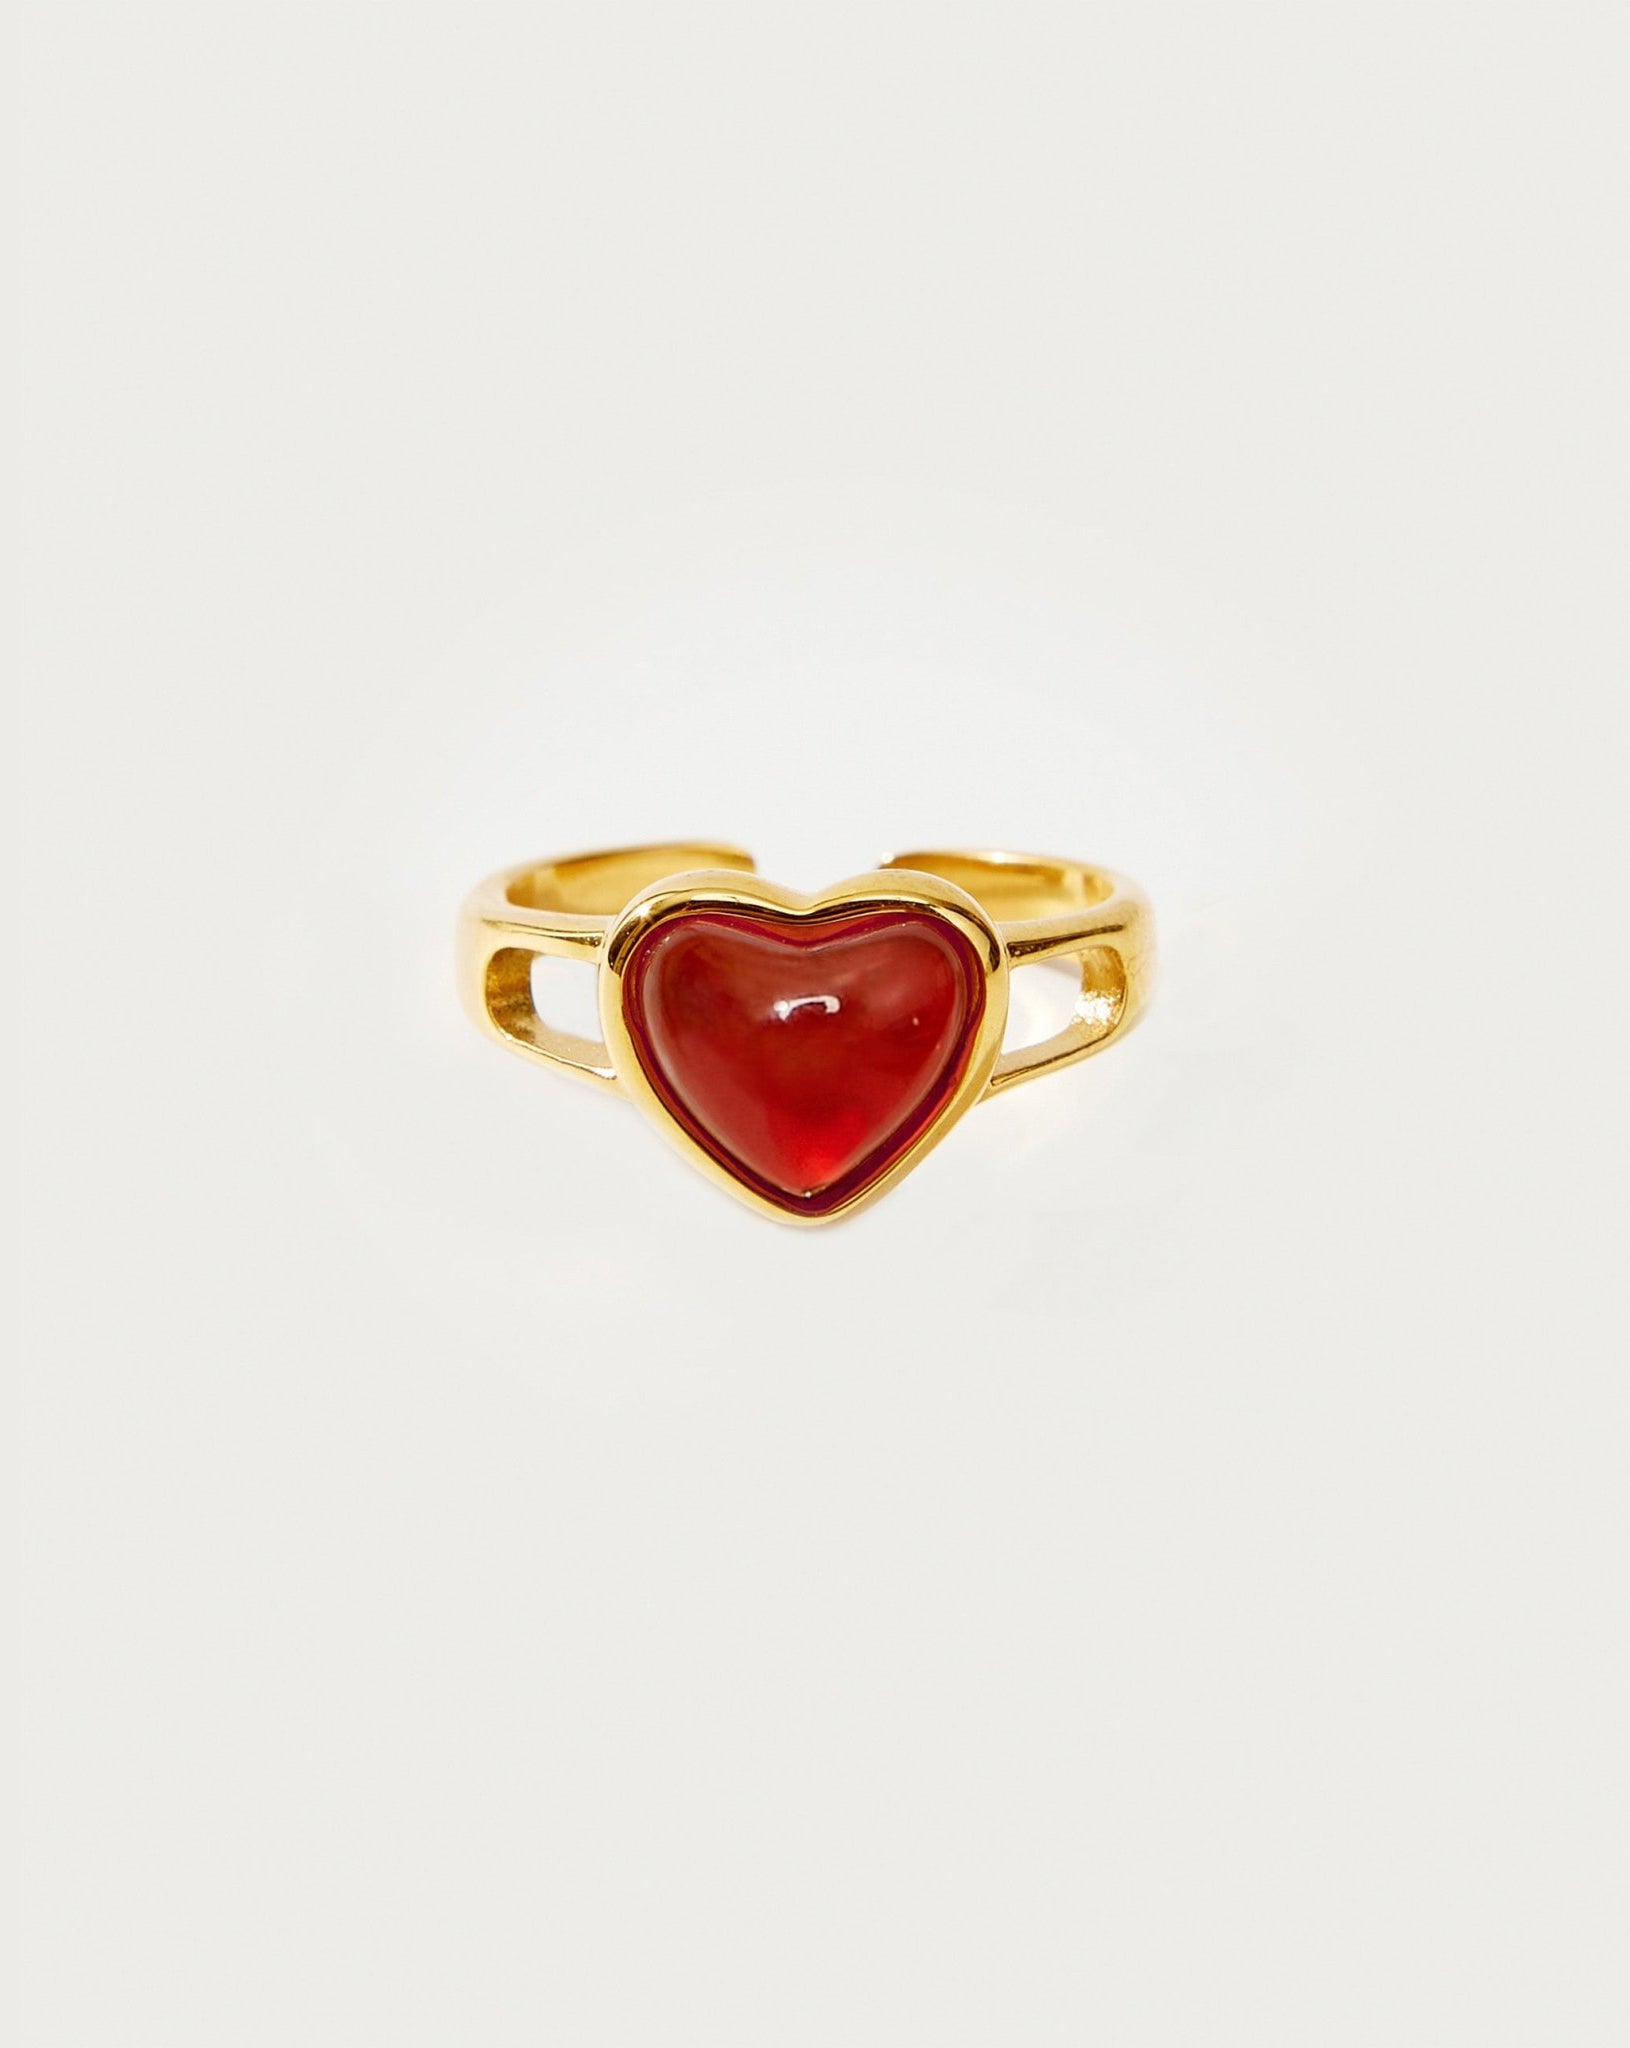 Carnelian Heart Ring